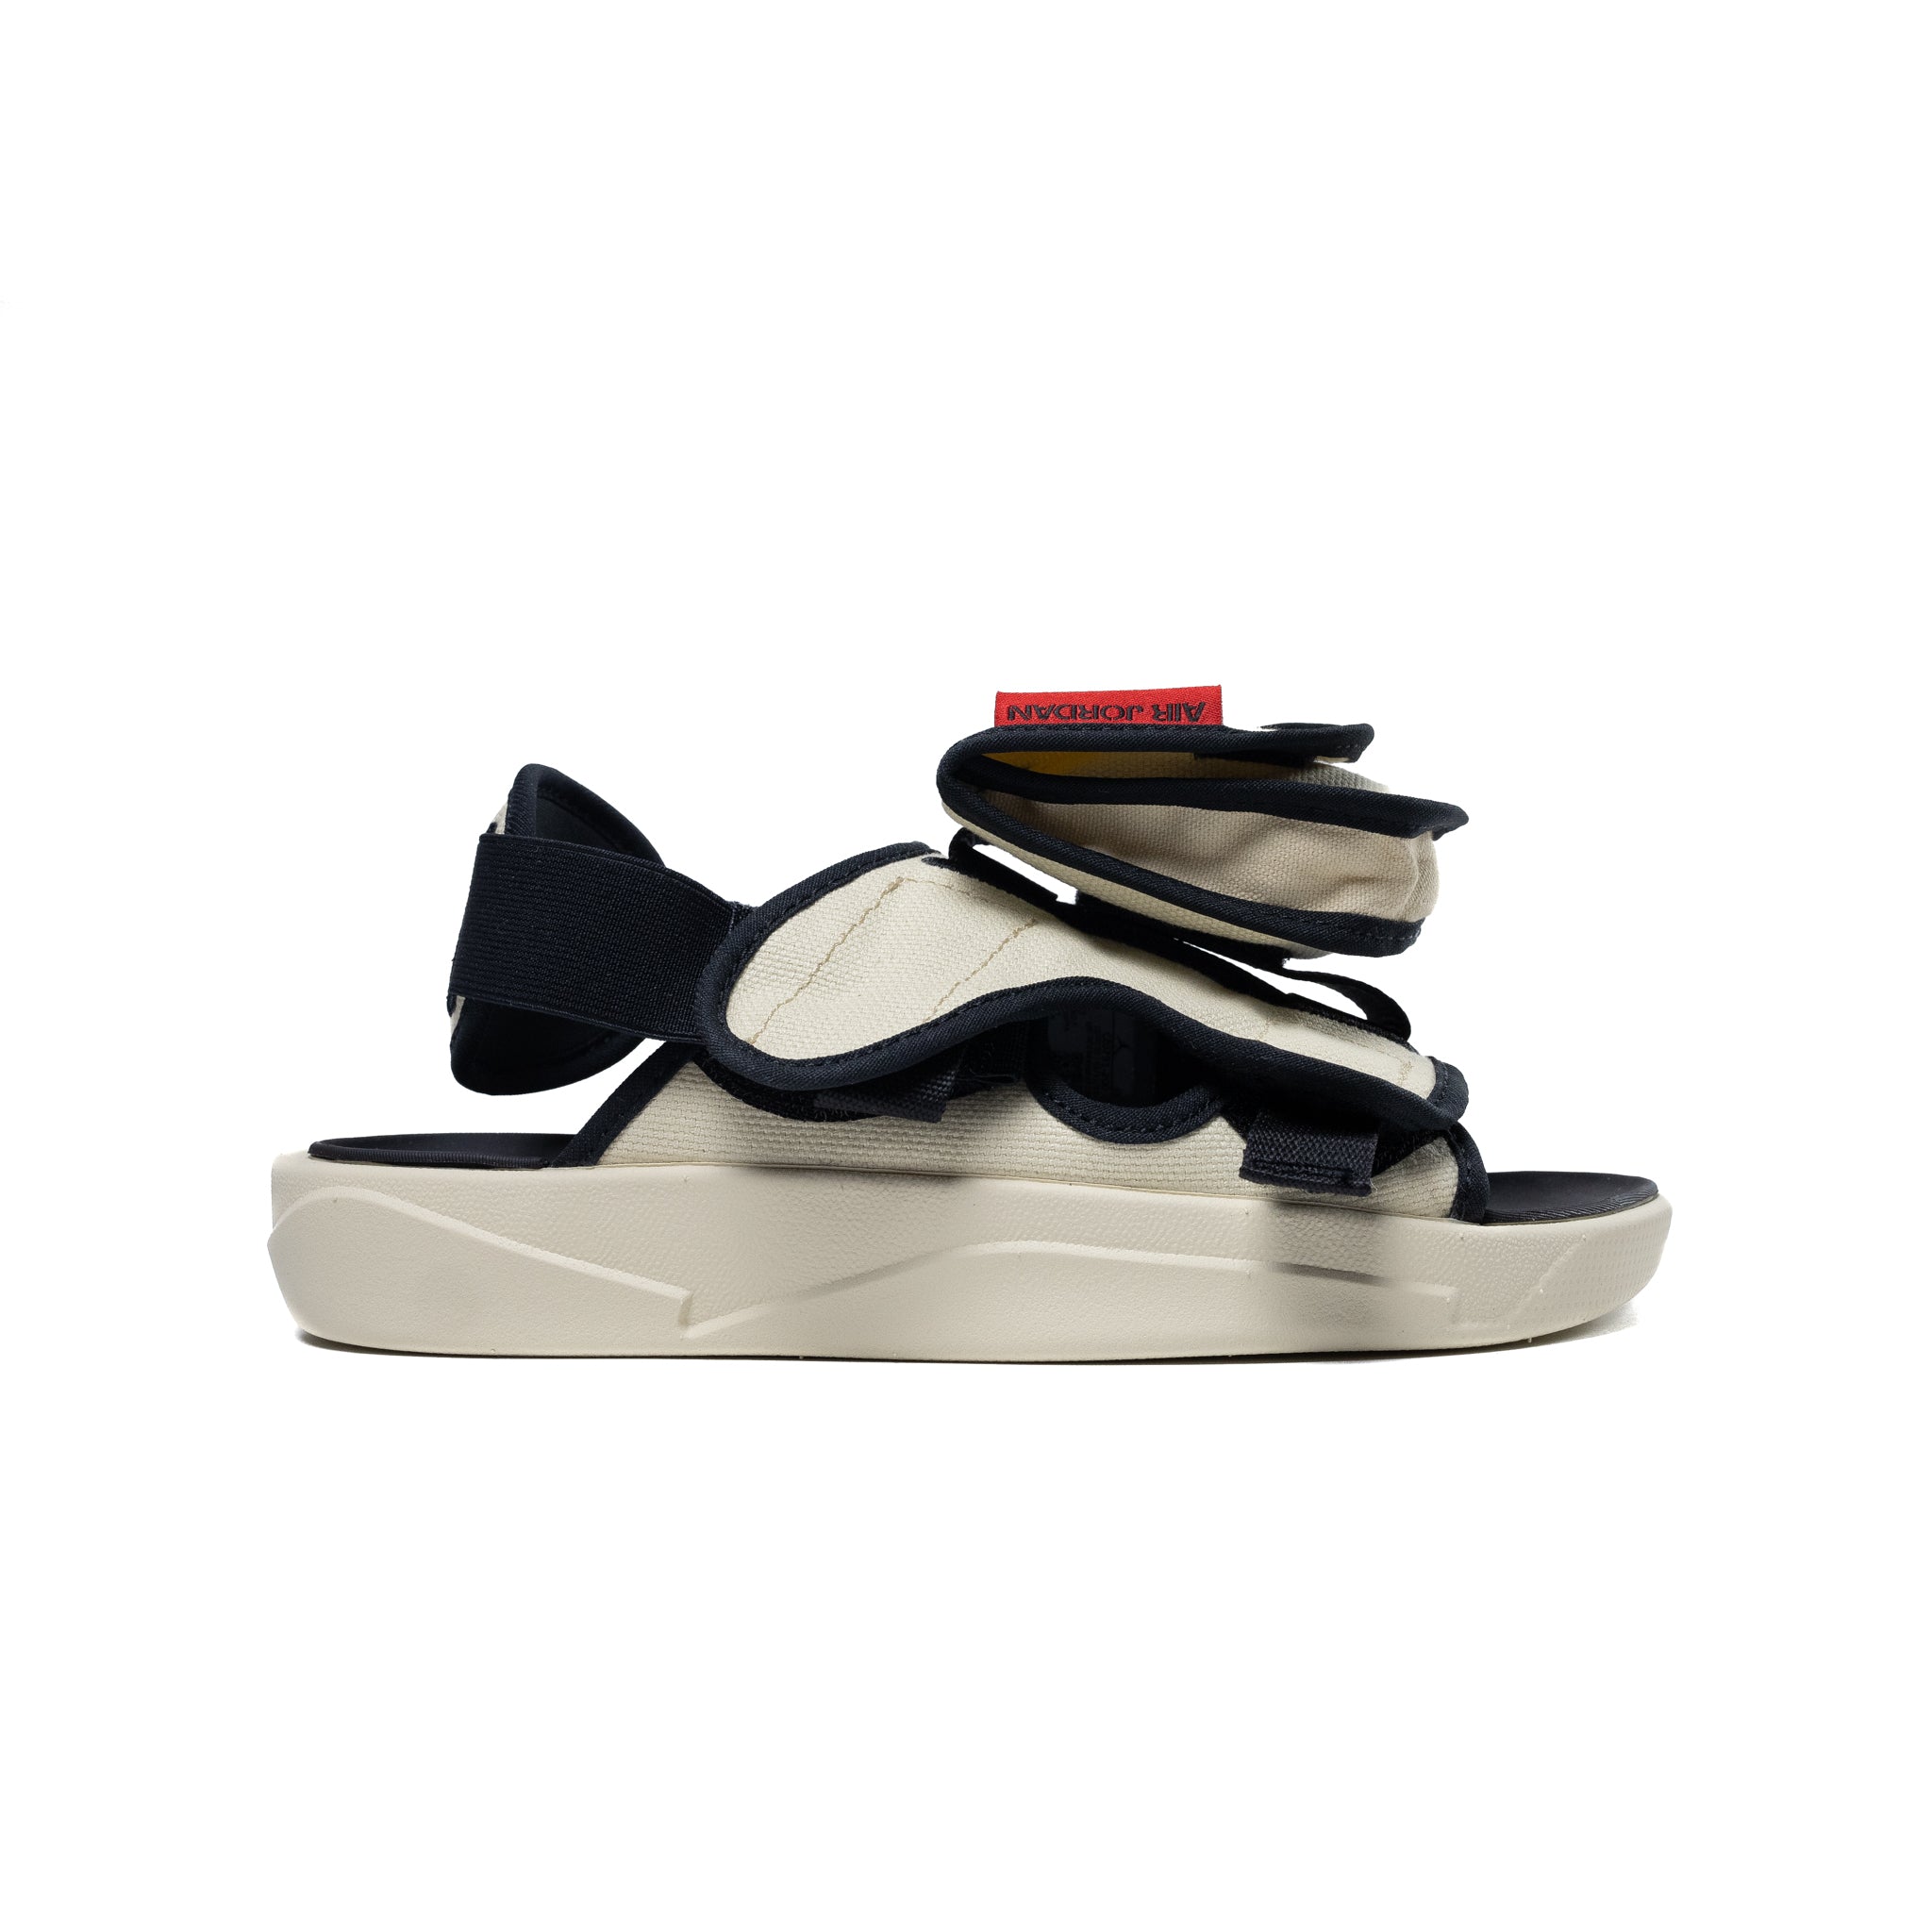 Air Jordan LS Sandals 'Beach'